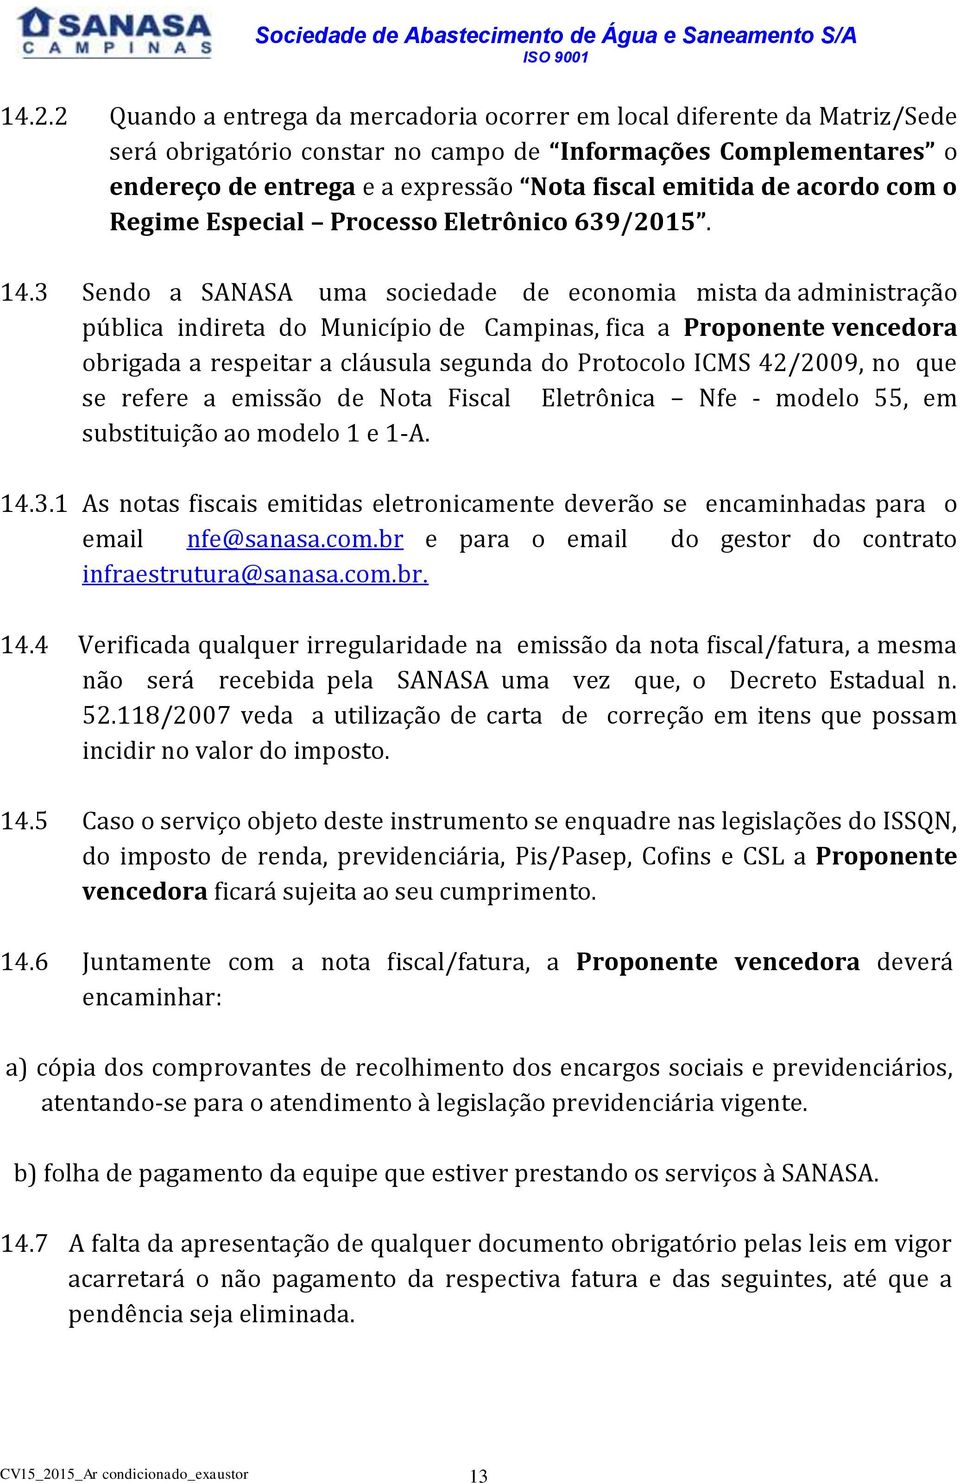 3 Sendo a SANASA uma sociedade de economia mista da administração pública indireta do Município de Campinas, fica a Proponente vencedora obrigada a respeitar a cláusula segunda do Protocolo ICMS